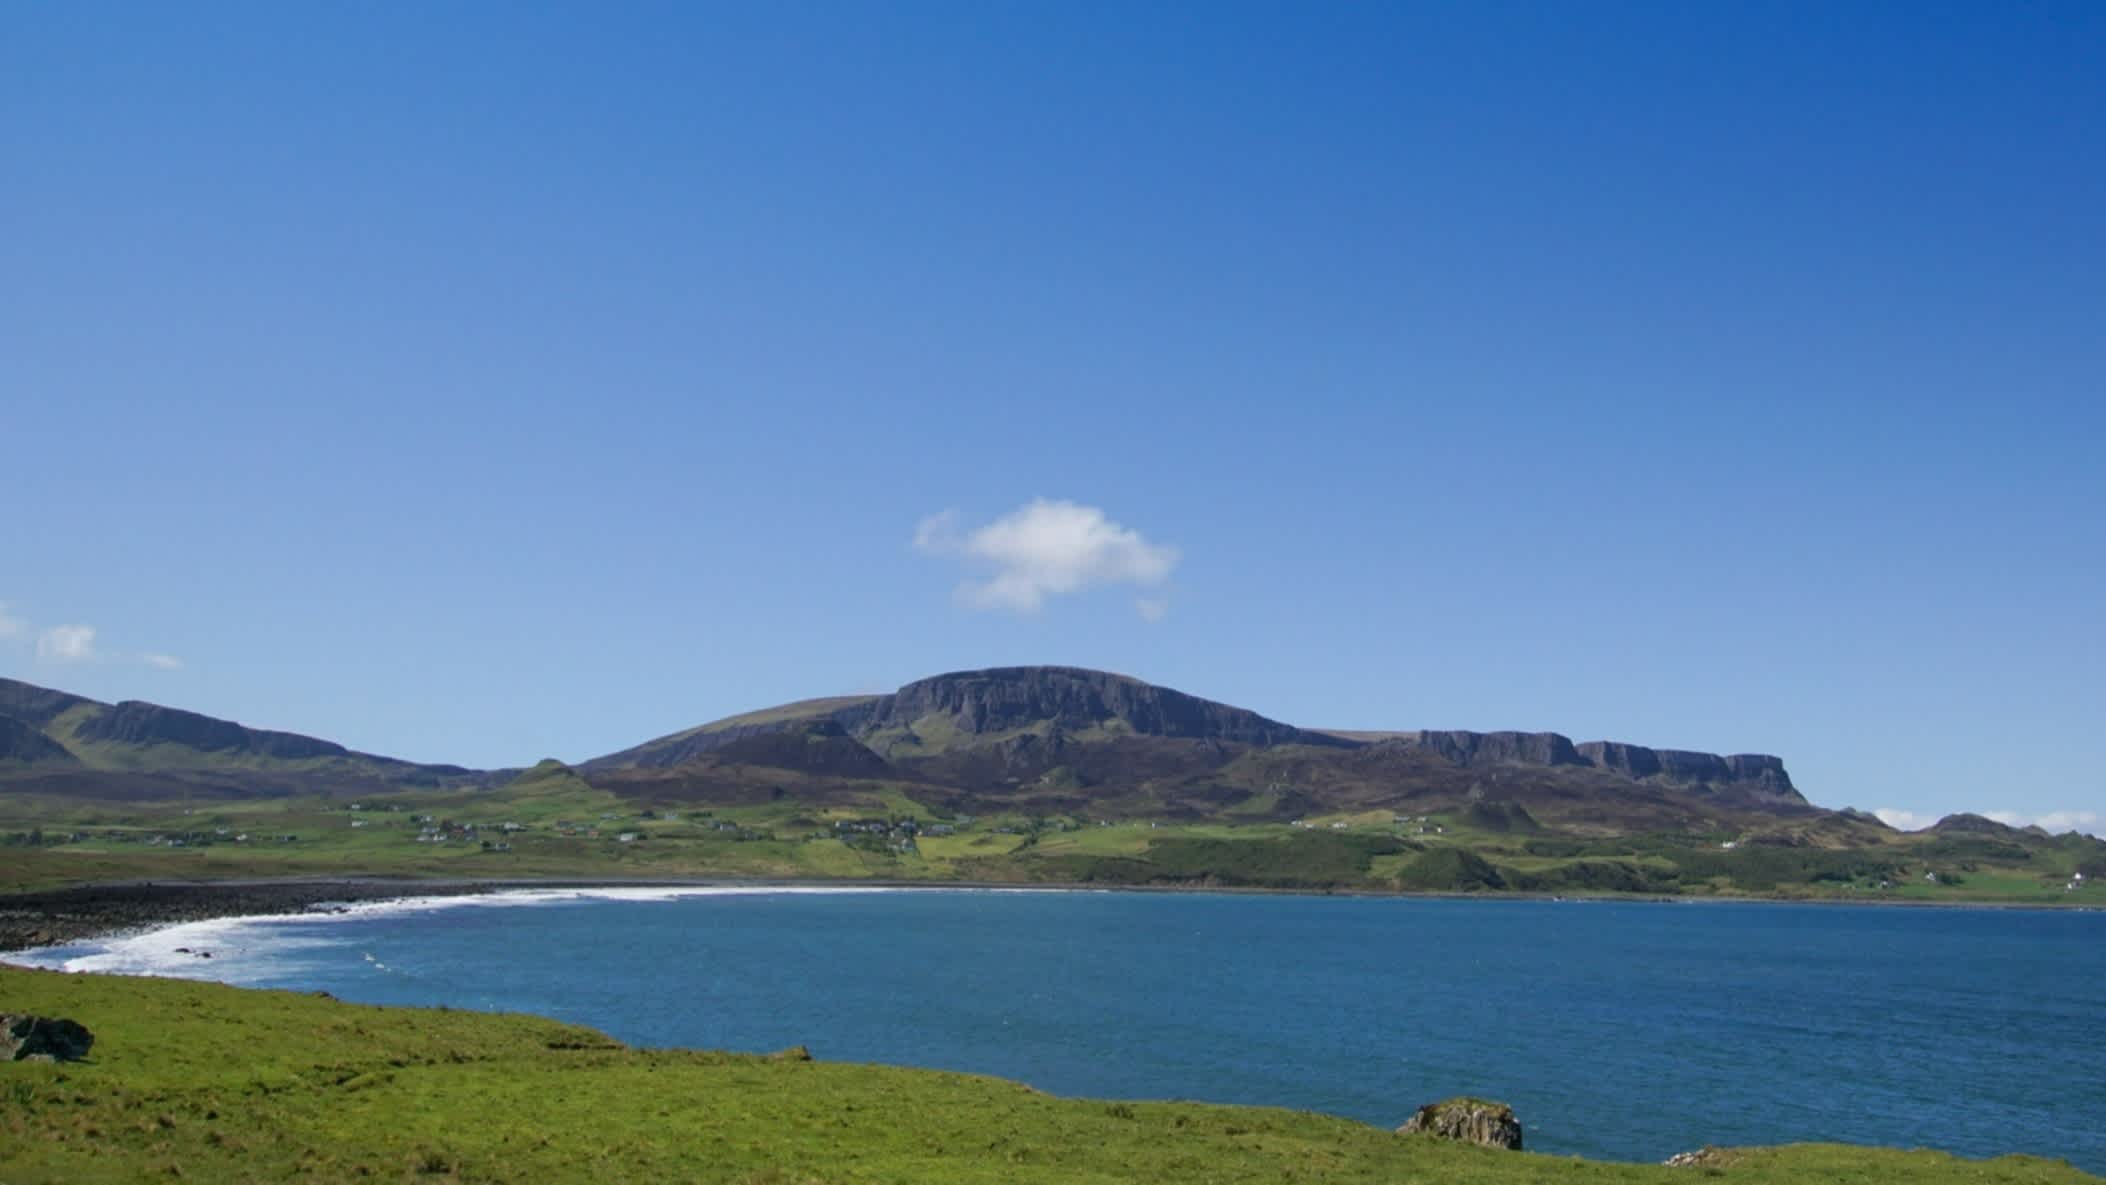 Vue sur la baie de Staffin sur l'île de Skye en Écosse, bordé de collines verdoyantes